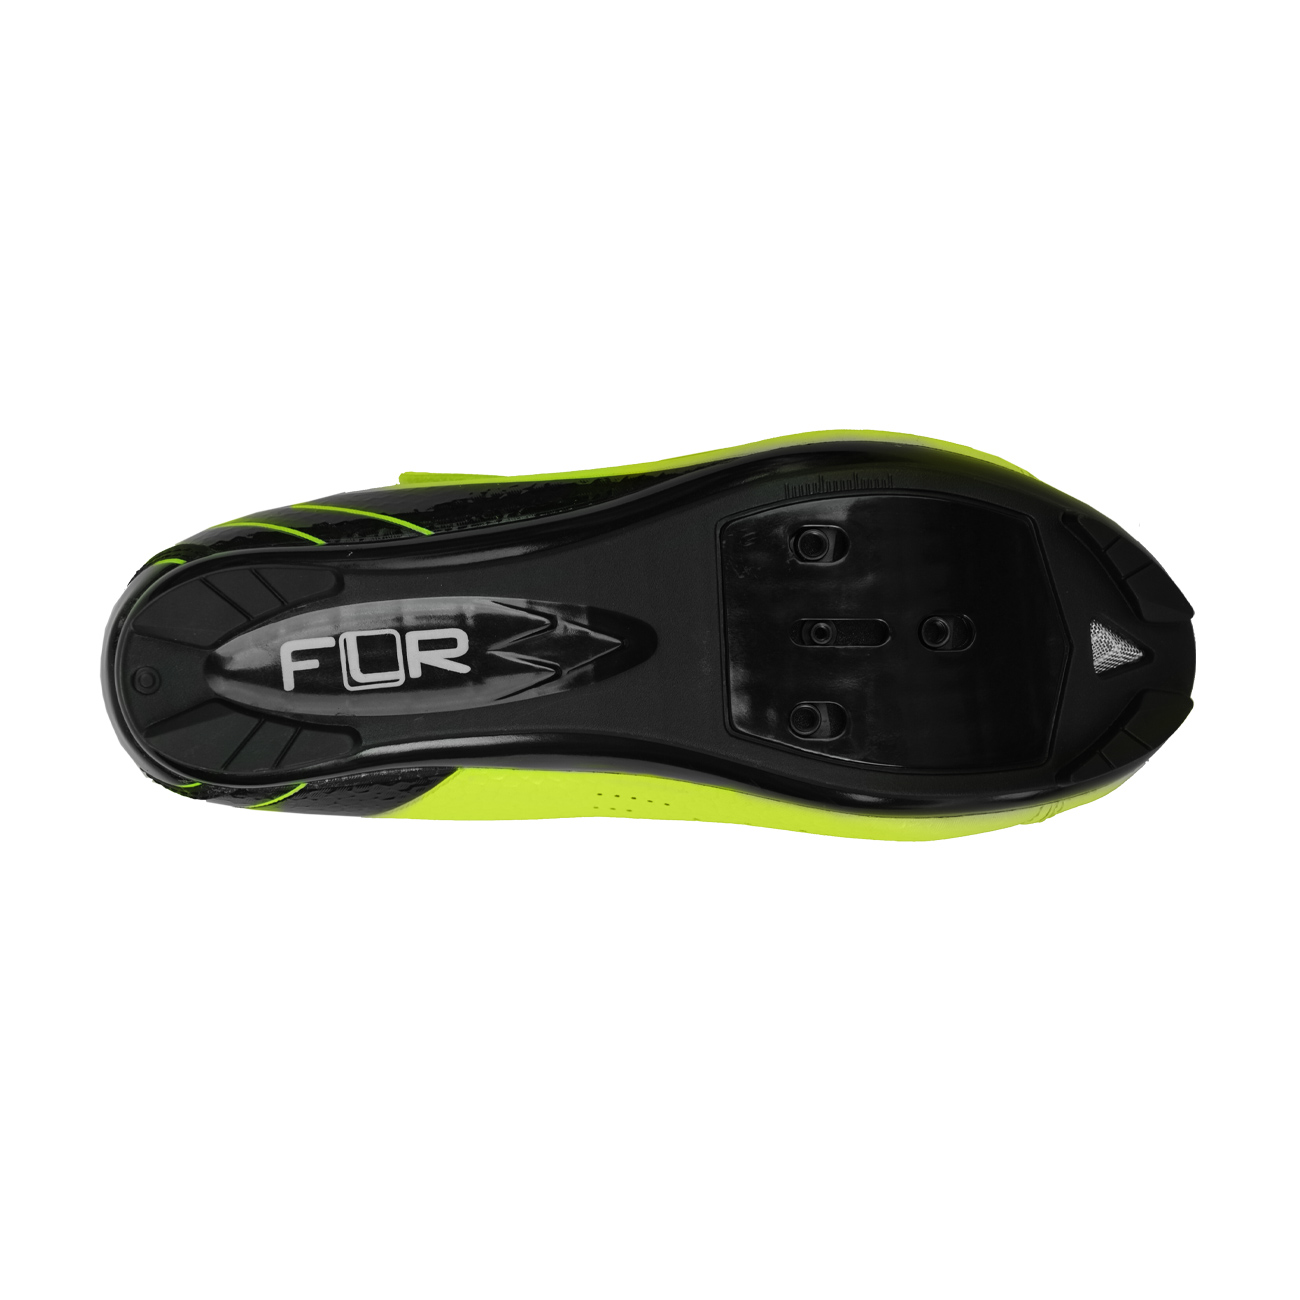 FLR Kerékpáros Cipő - F35 - Sárga/fekete